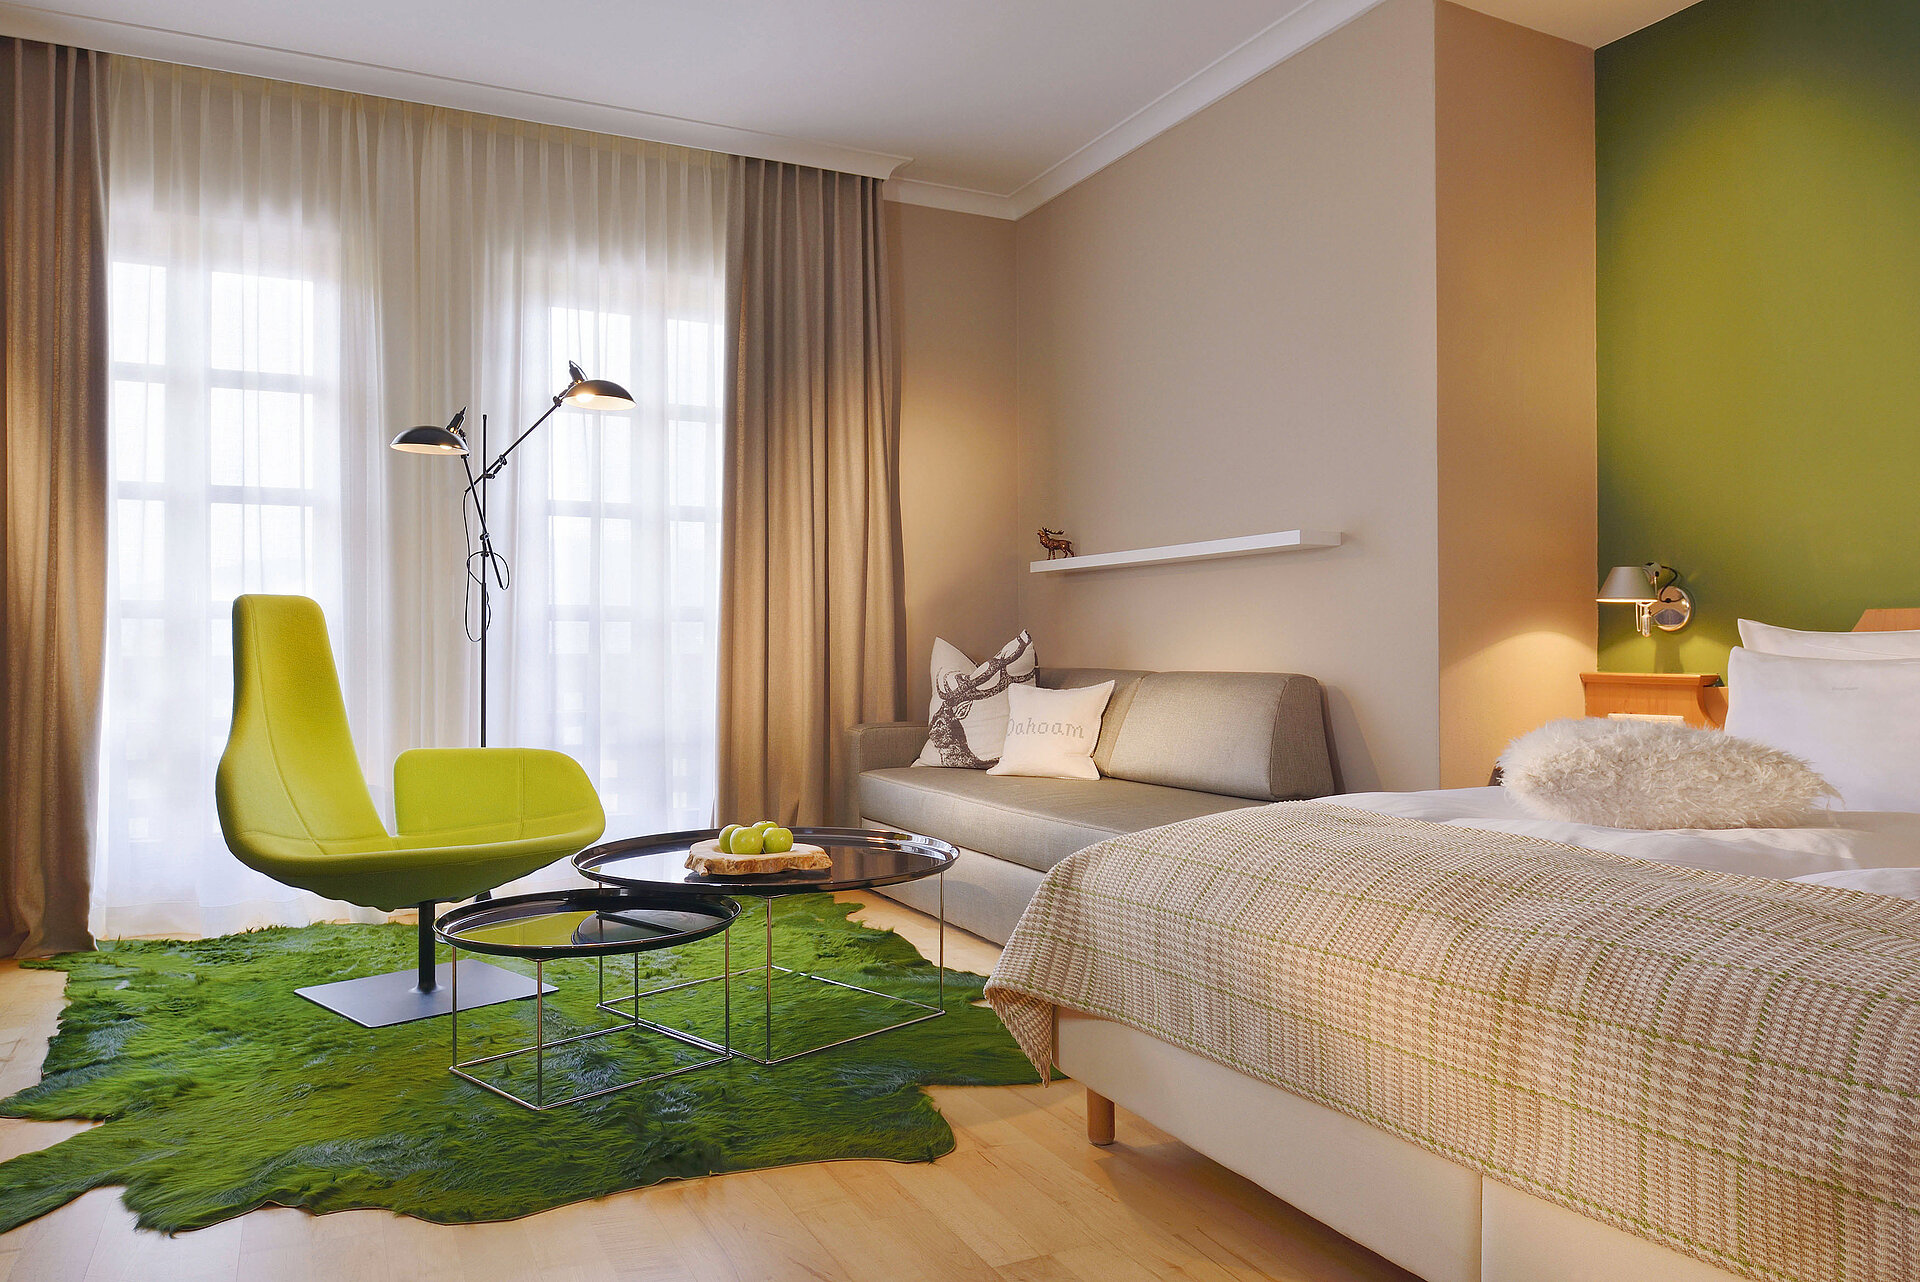 Zimmer mit Bett, Sofa und Sitzbereich, überwiegend gehalten in Grün- und Beigetönen.